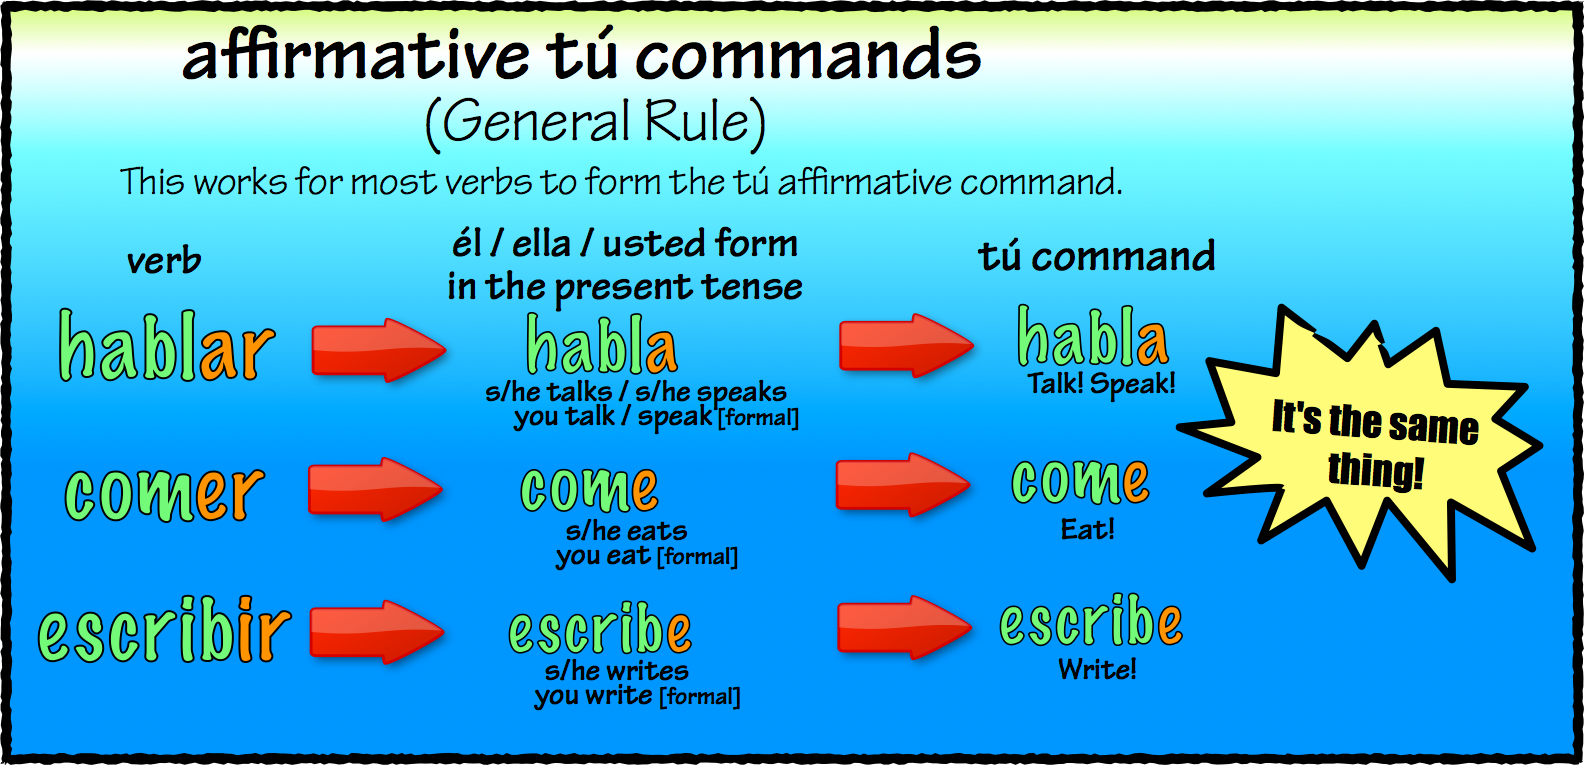 03-affirmative-t-commands-se-or-jordan